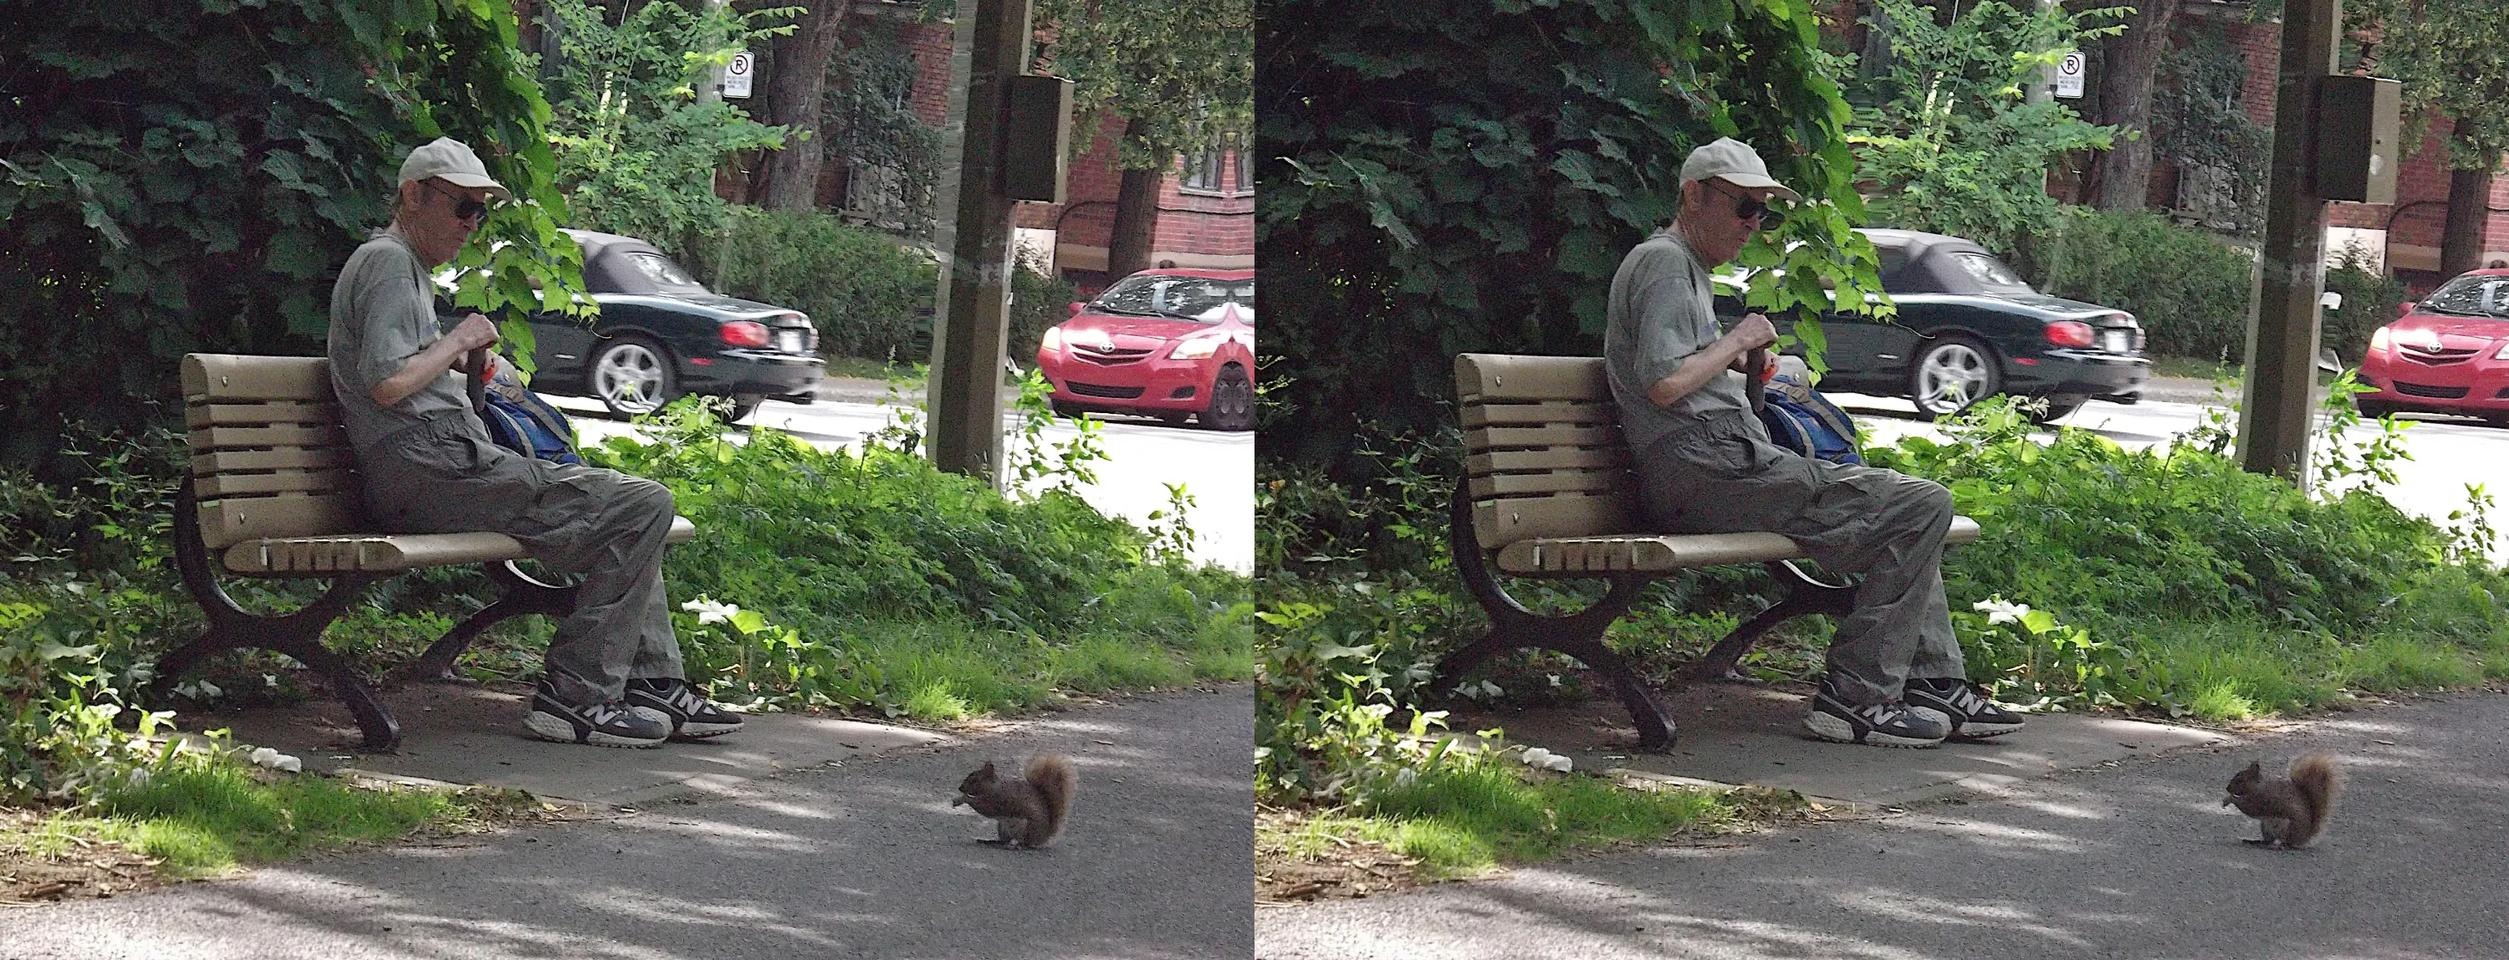 Man Feeding a Squirrel